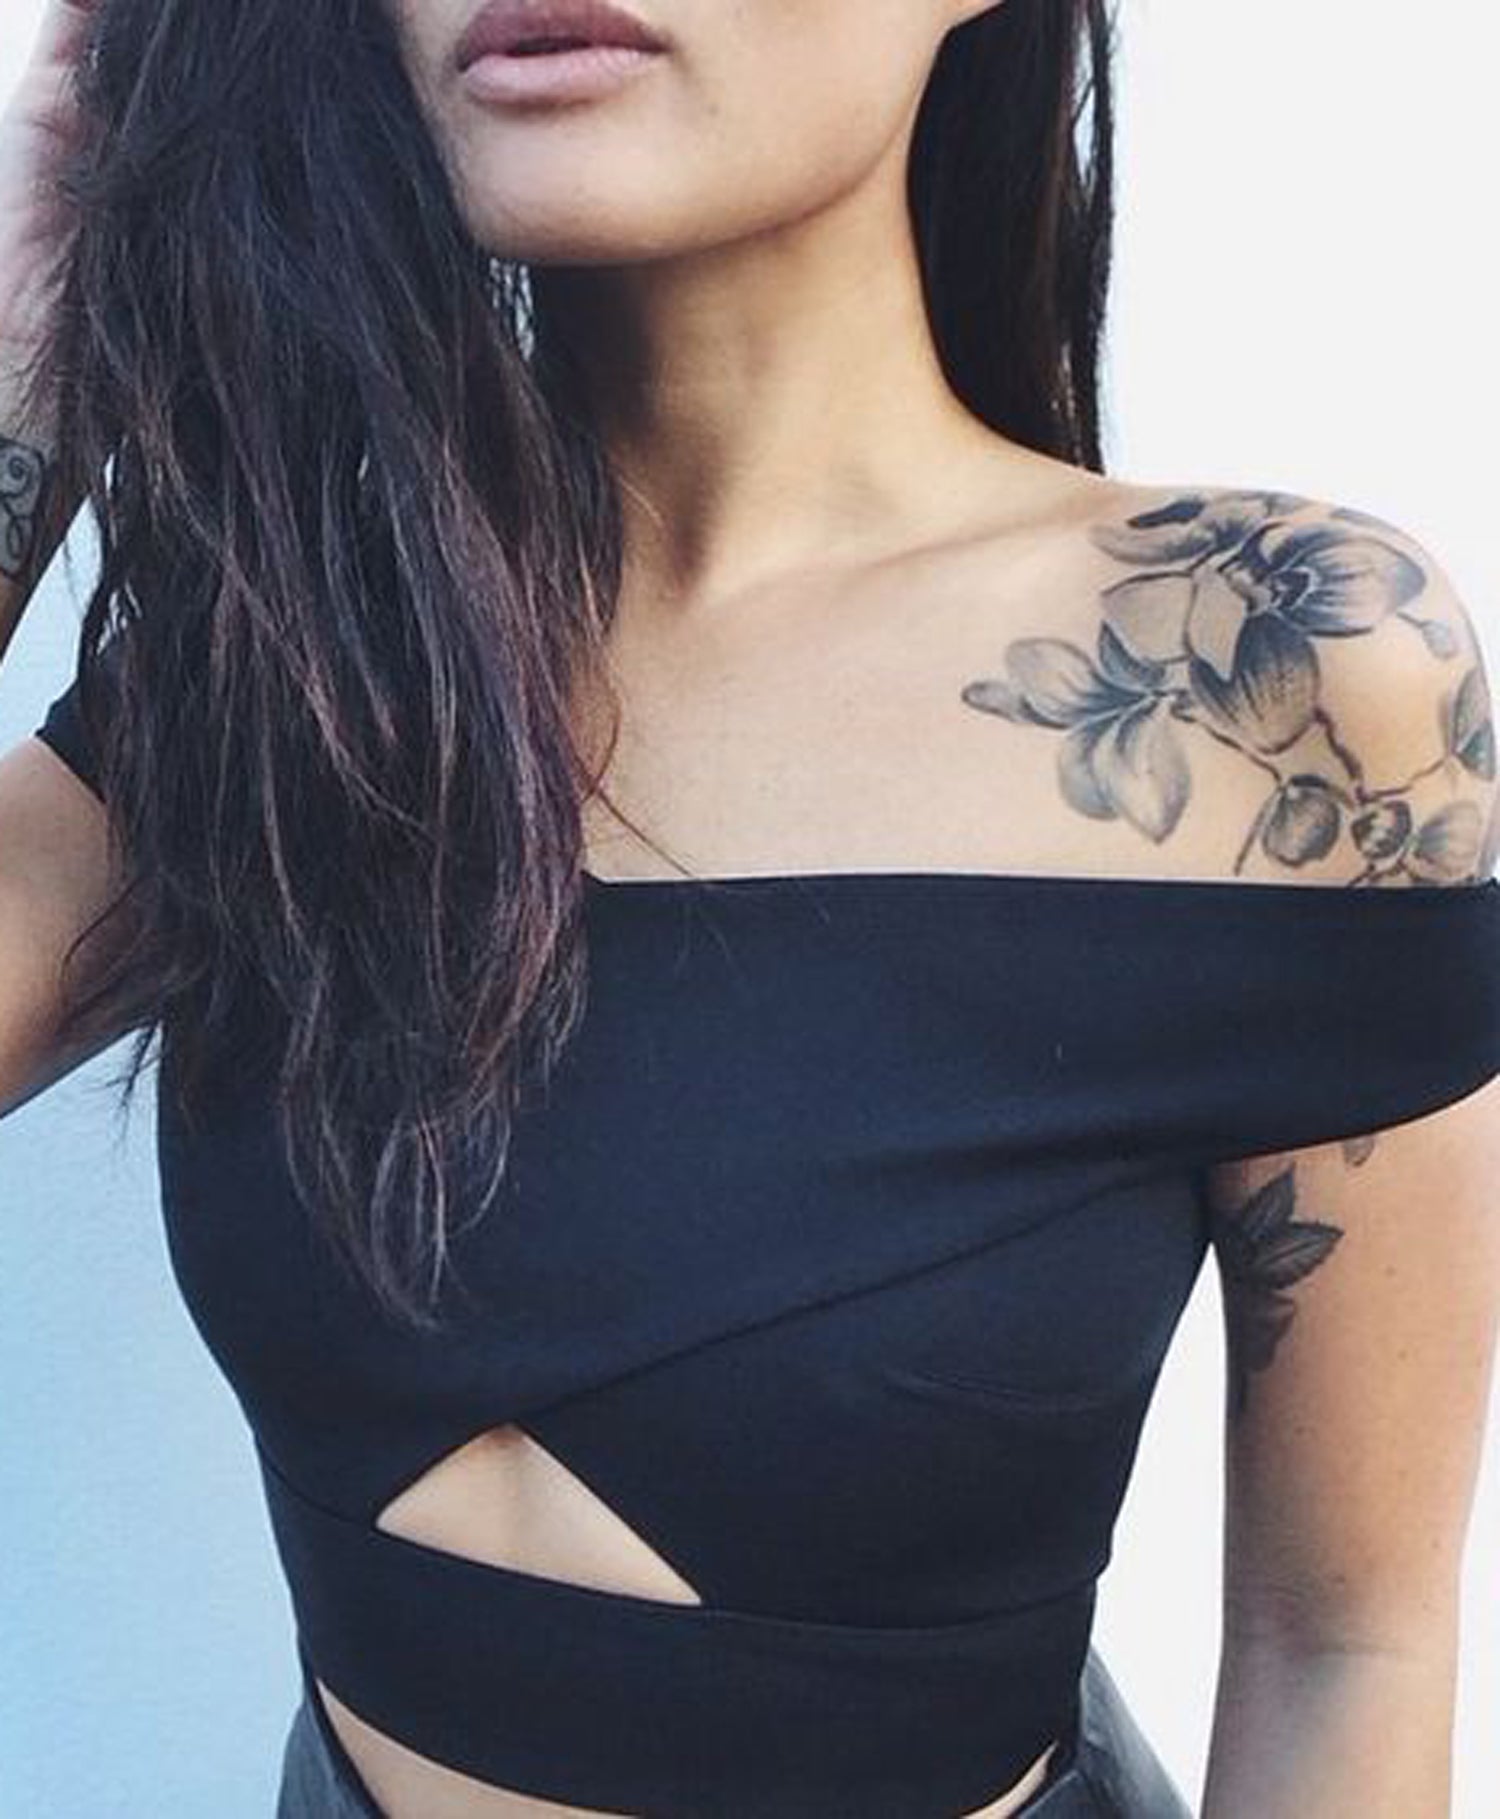 Easy Shoulder Rose Tattoo Ideas for Girls - Flower Arm Sleeve ideias de tatuagem para mulheres - www.MyBodiArt.com